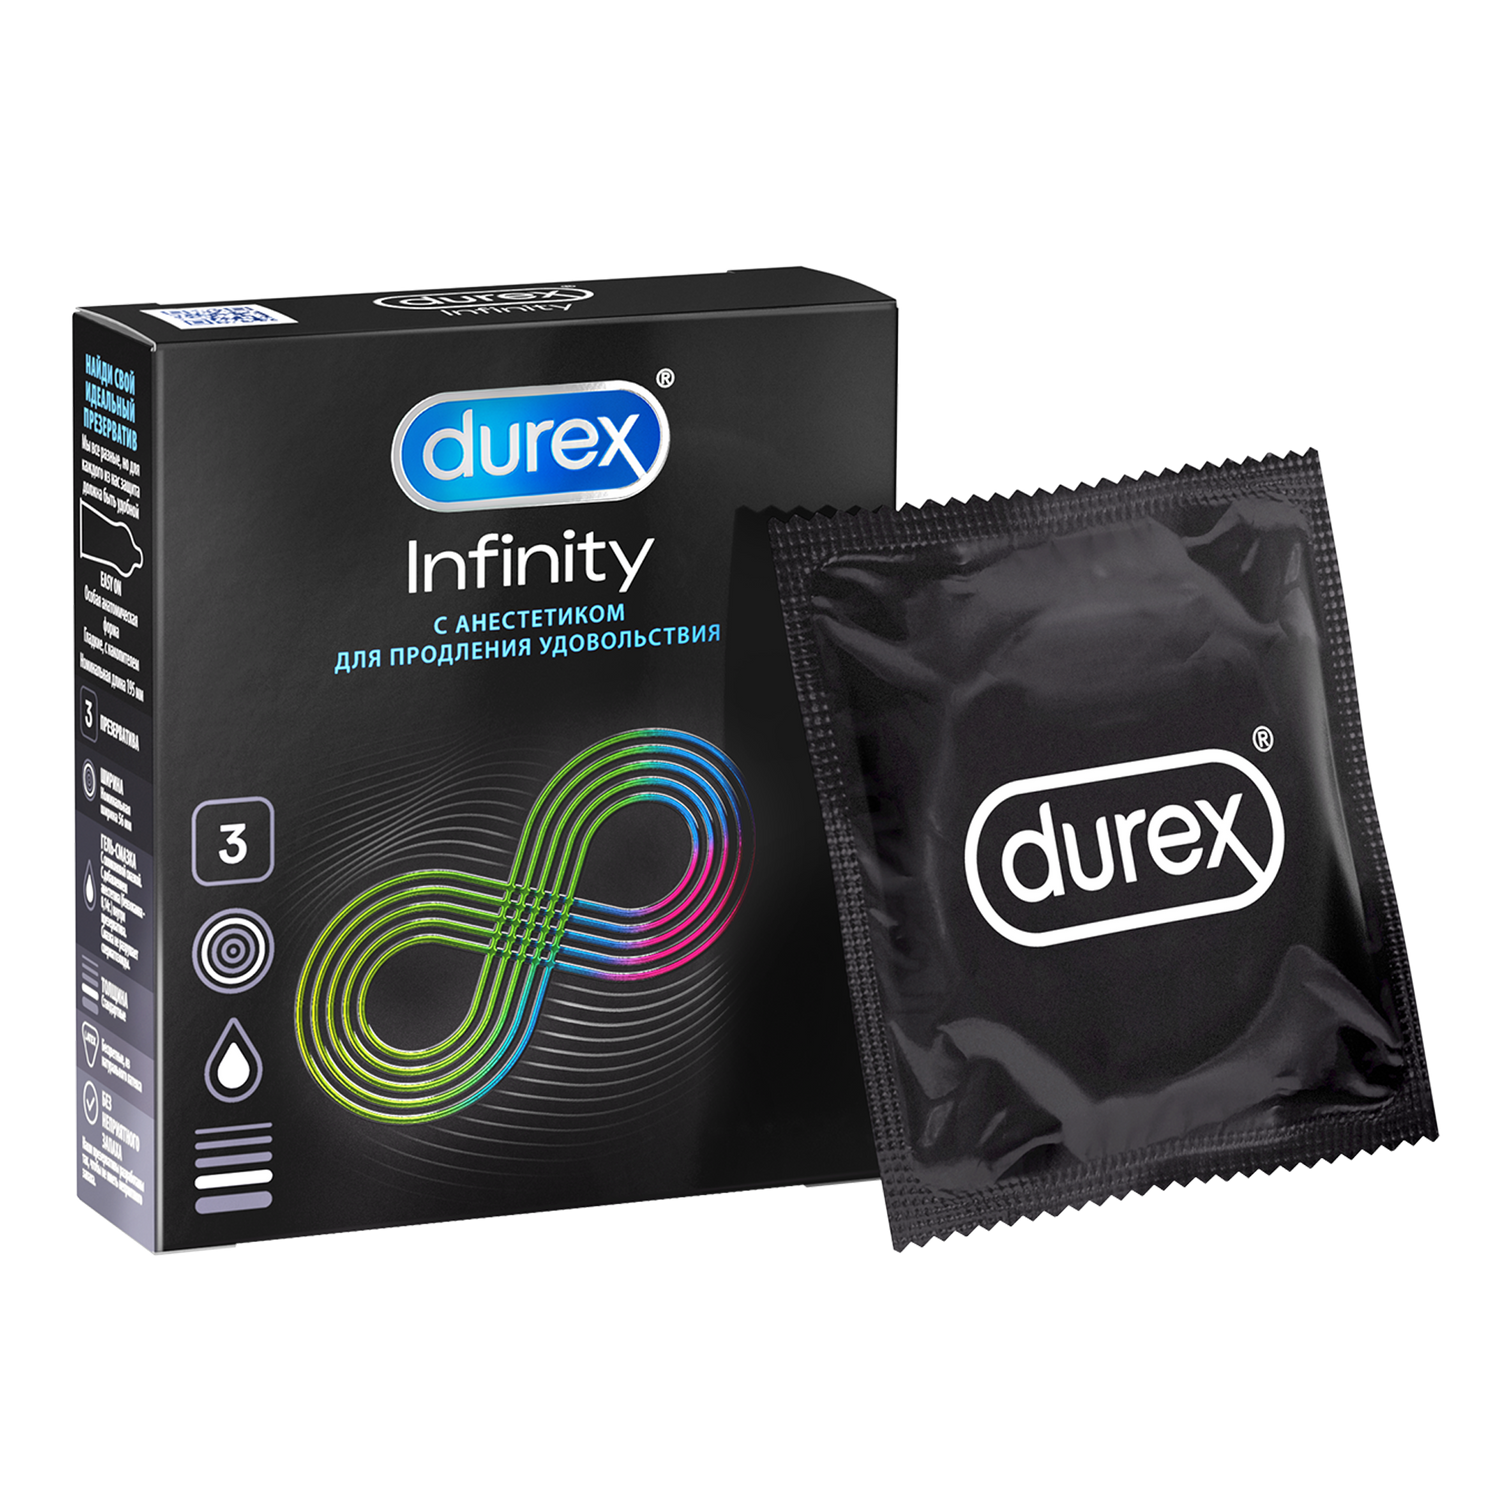 Презервативы Durex Infinity с анестетиком гладкие, 3 шт.